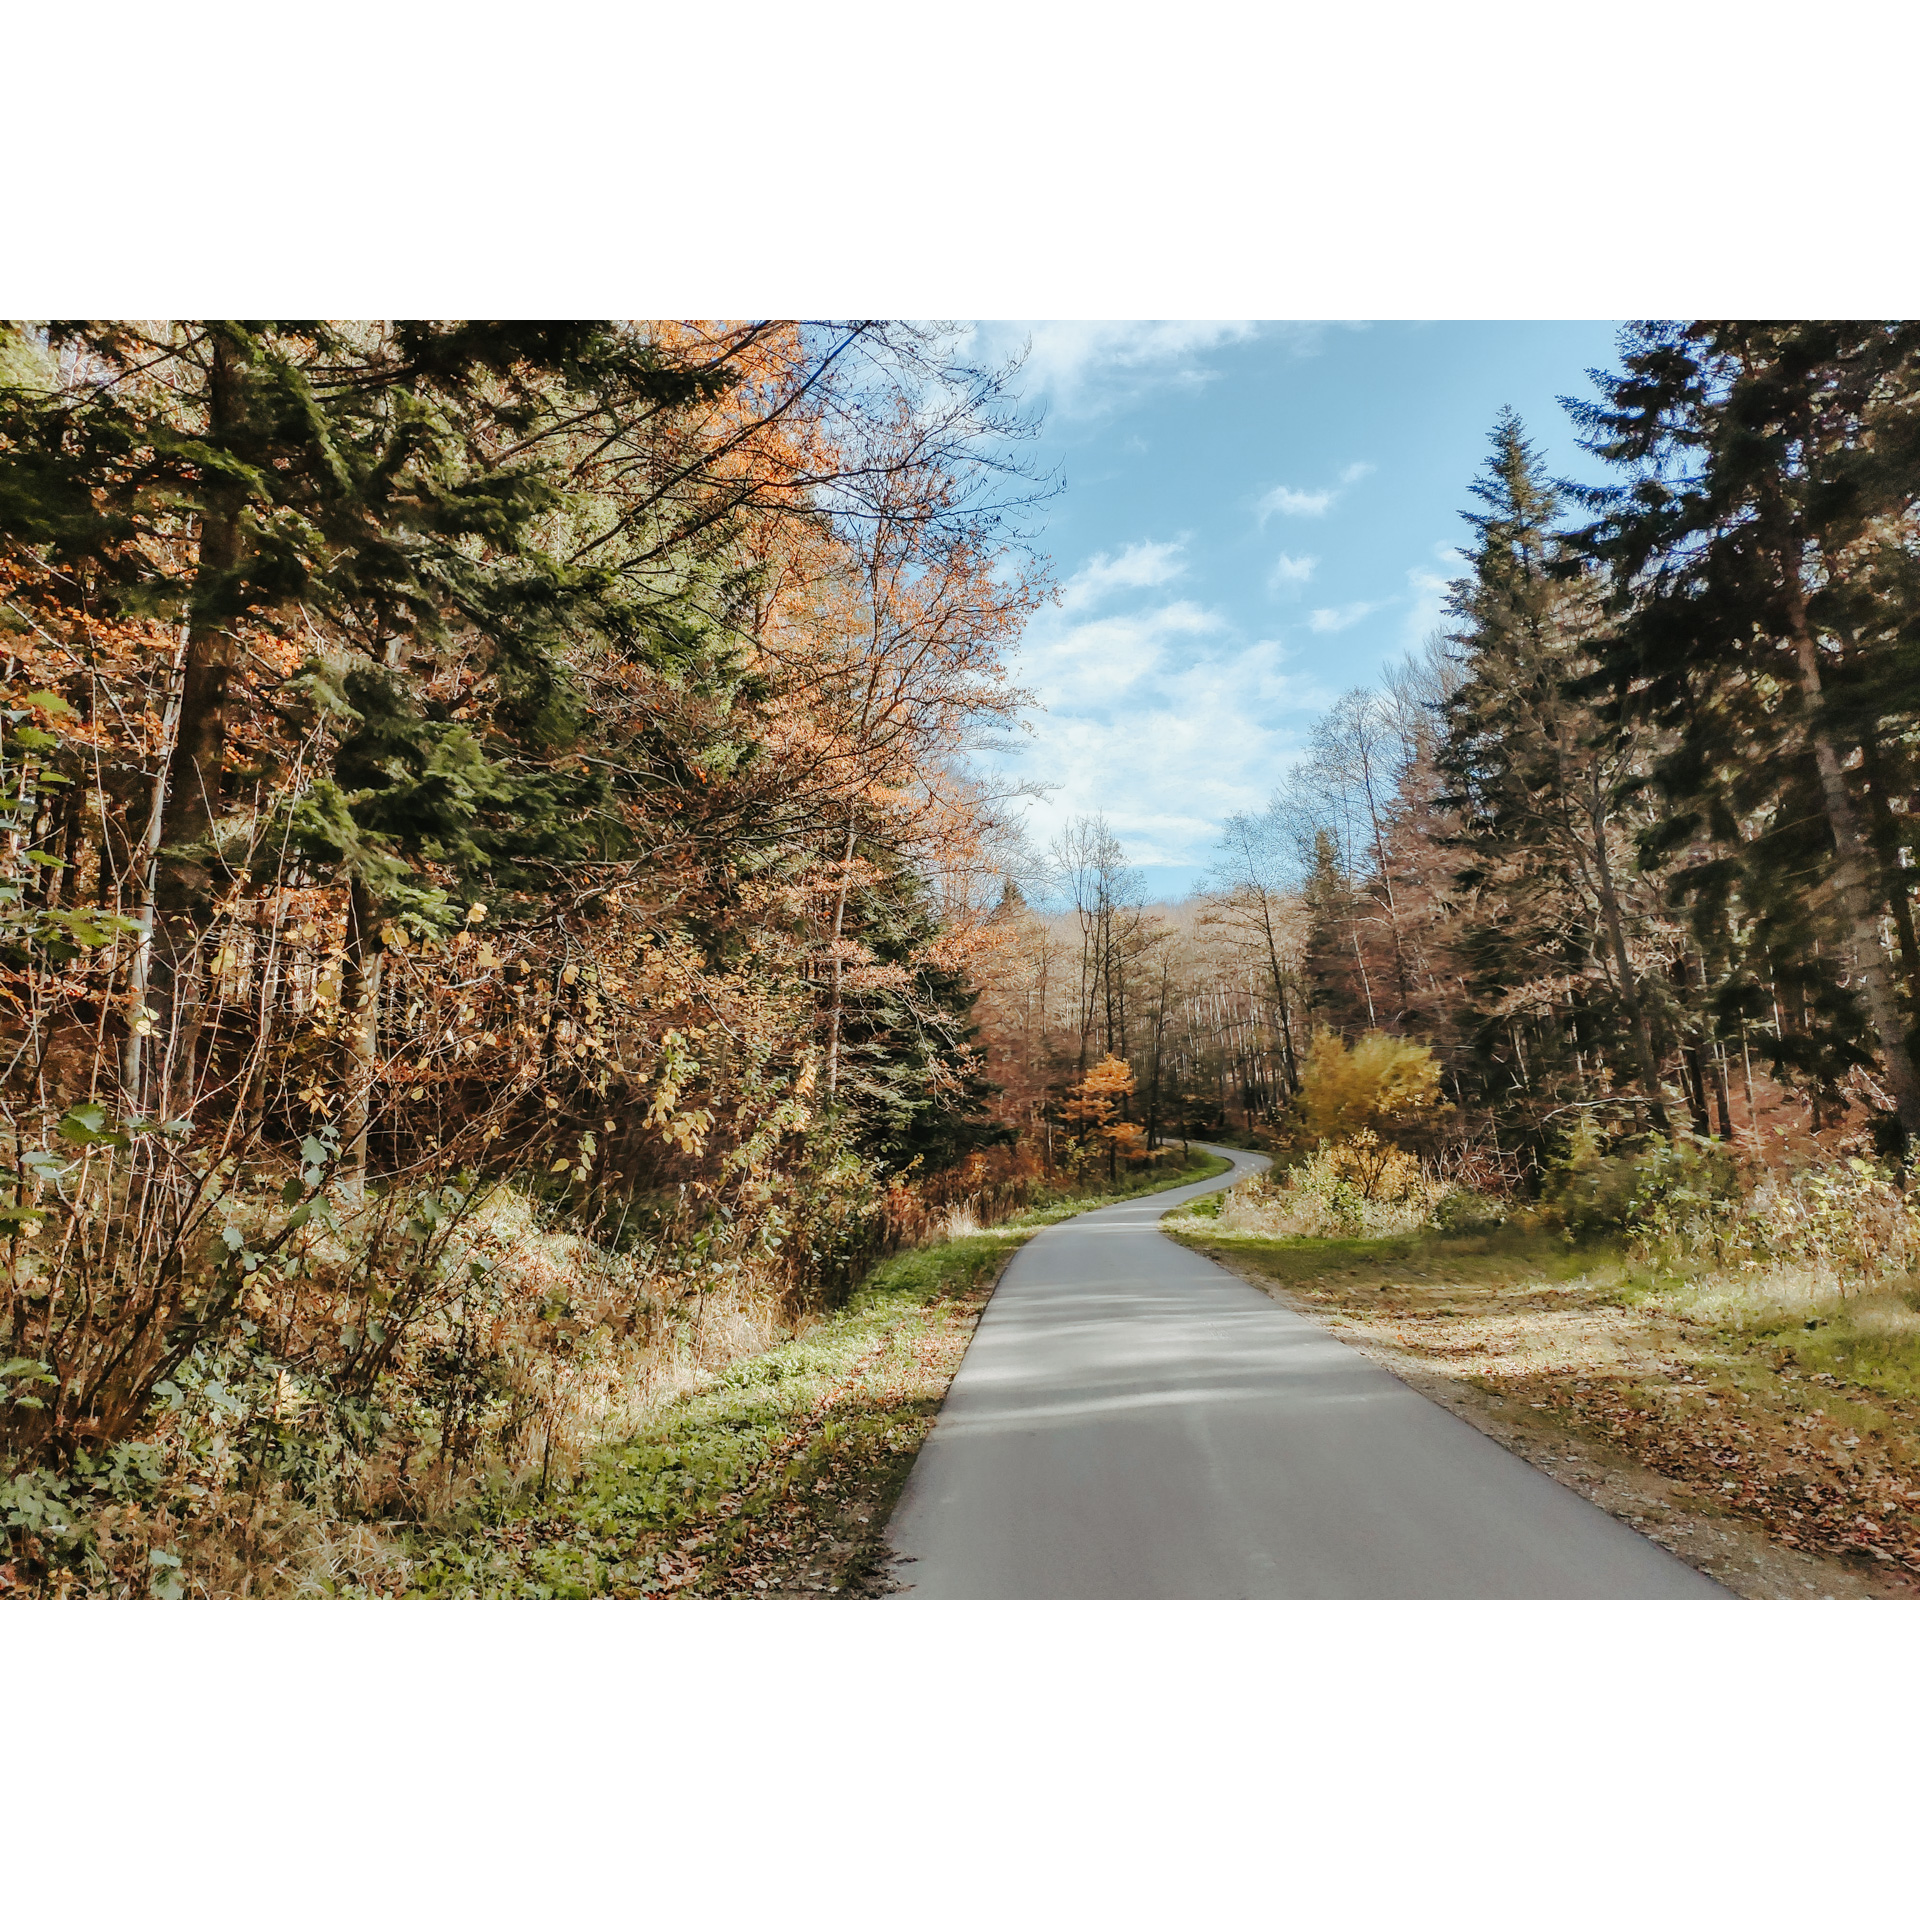 Droga asfaltowa w lesie biegnąca między wysokimi drzewami iglastymi i liściastymi